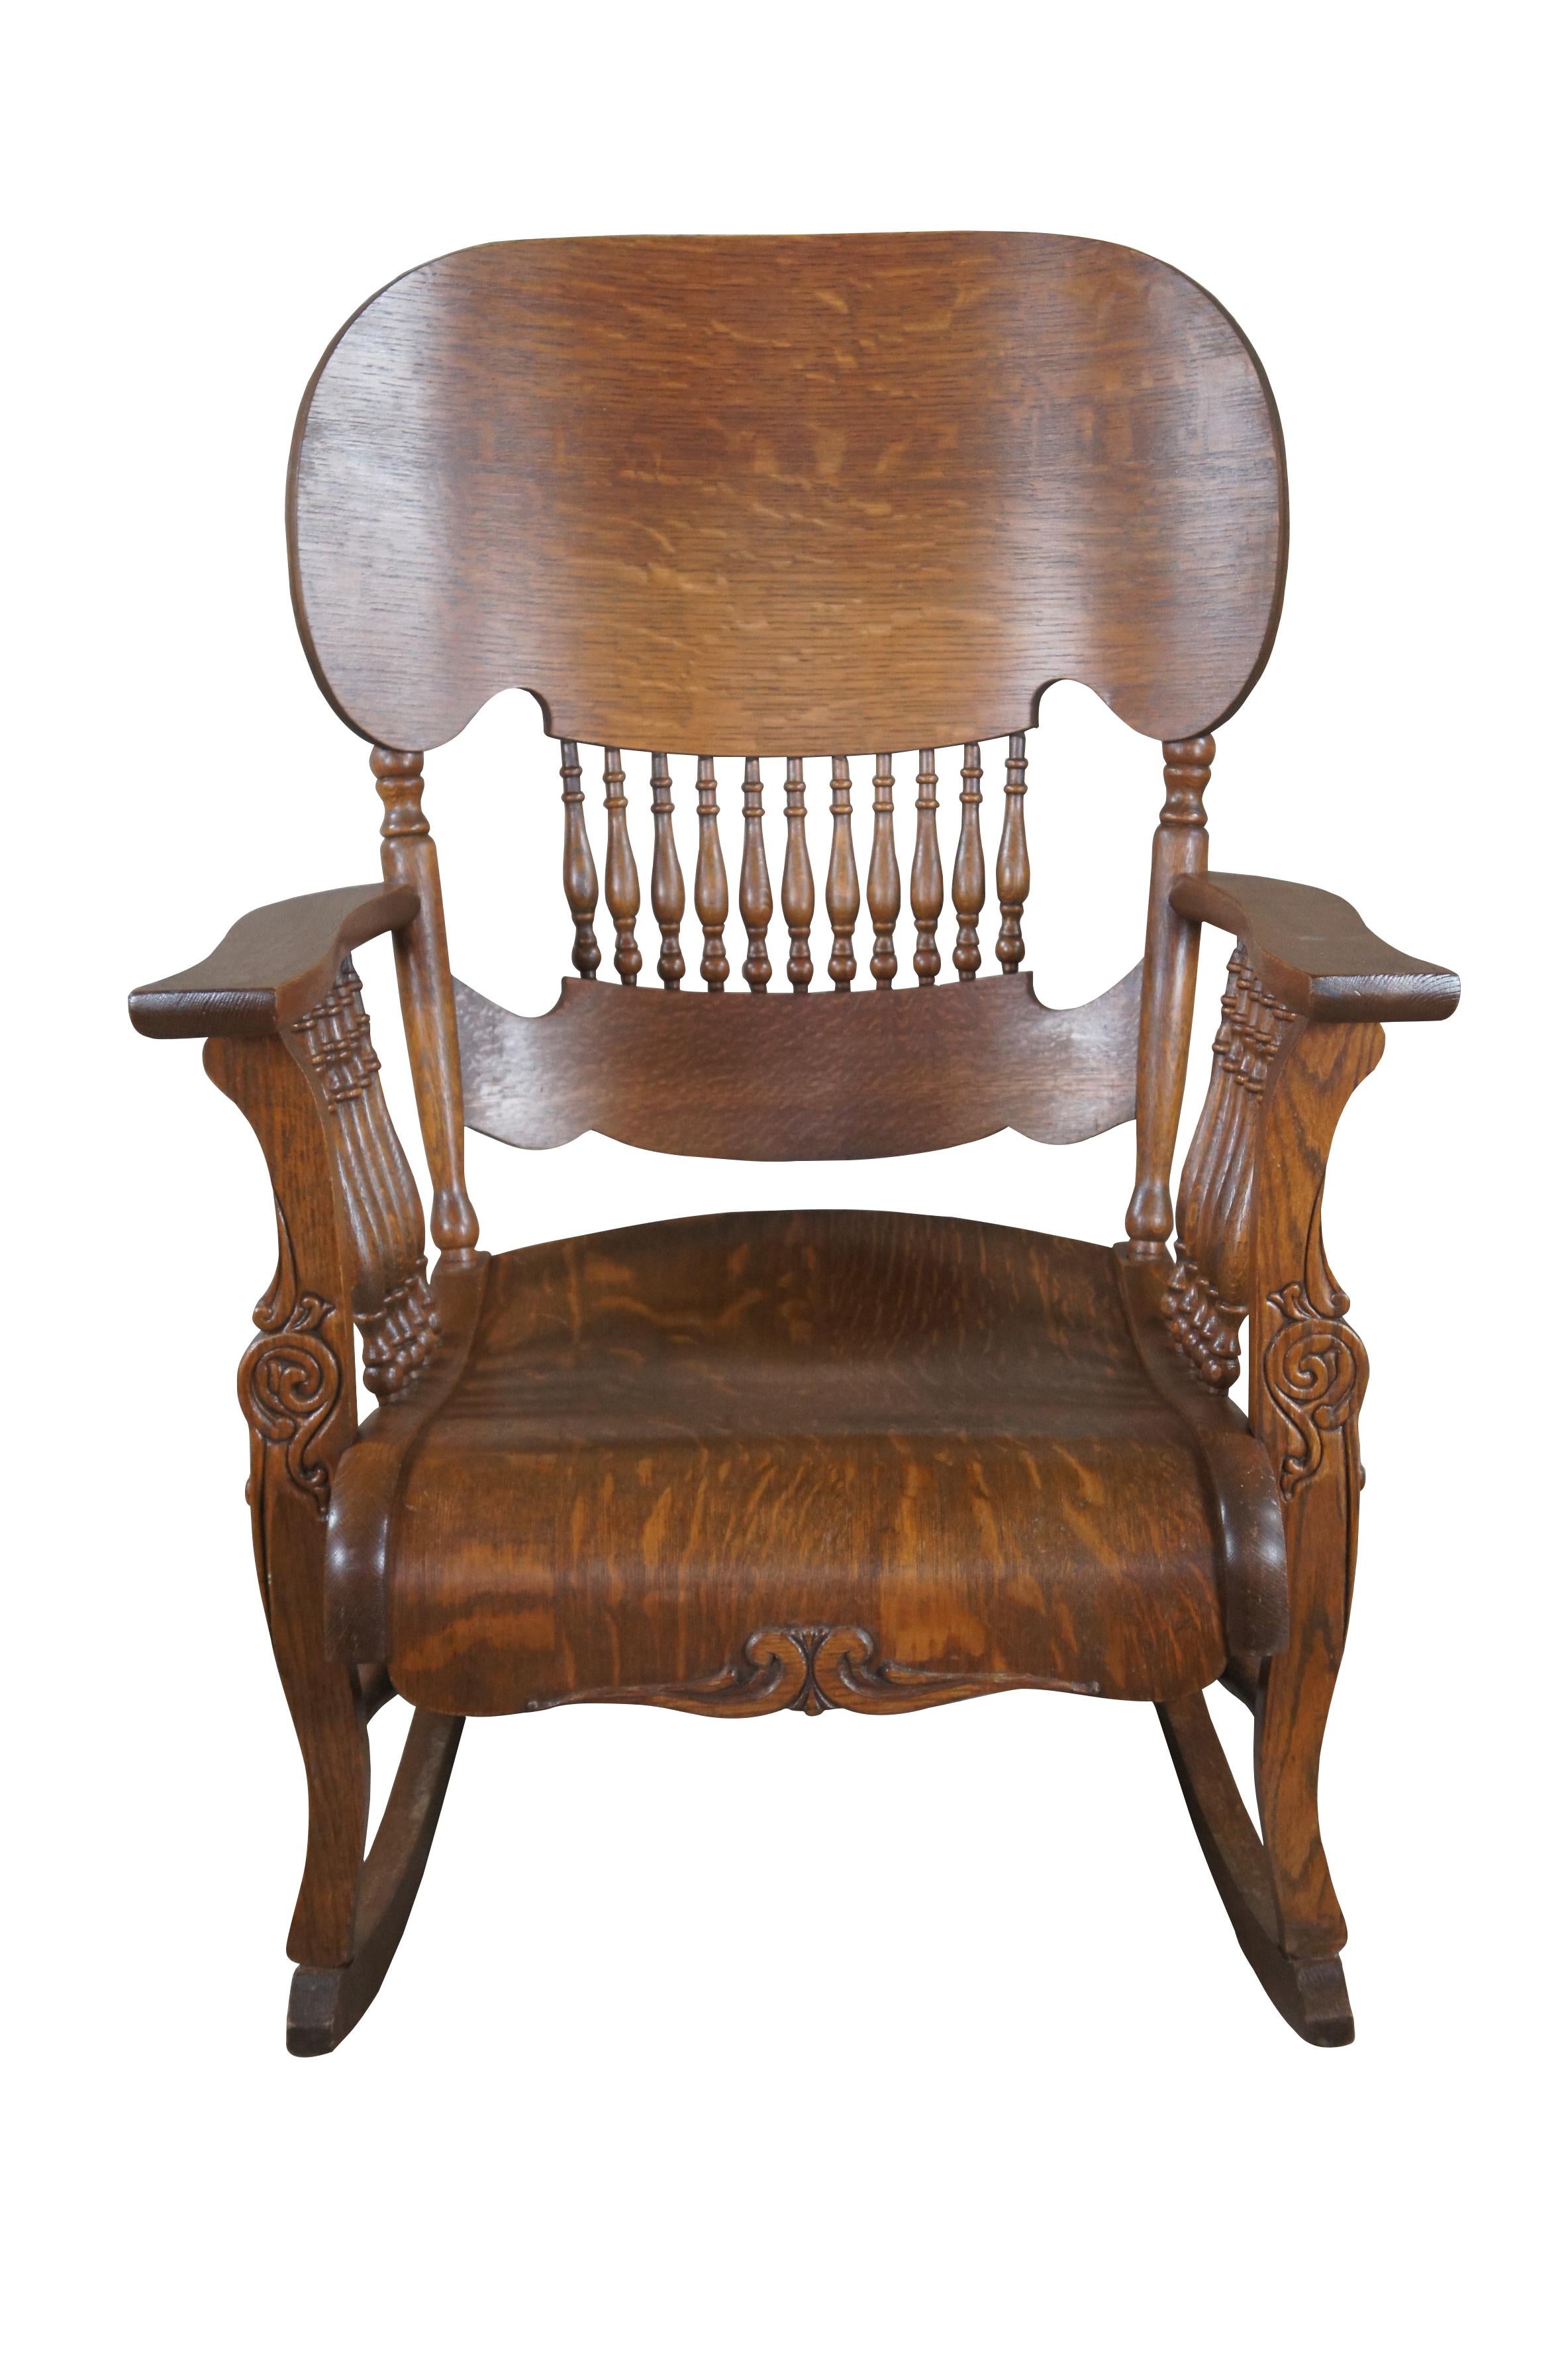 Magnifique chaise Mission de style Arts and Crafts américain, vers les années 1930. Ce joyau présente un côté et un dossier en fuseau menant à une couronne blindée et à un tablier en serpentin. Fabriqué à partir de chêne équarri (Tiger Oak) avec un